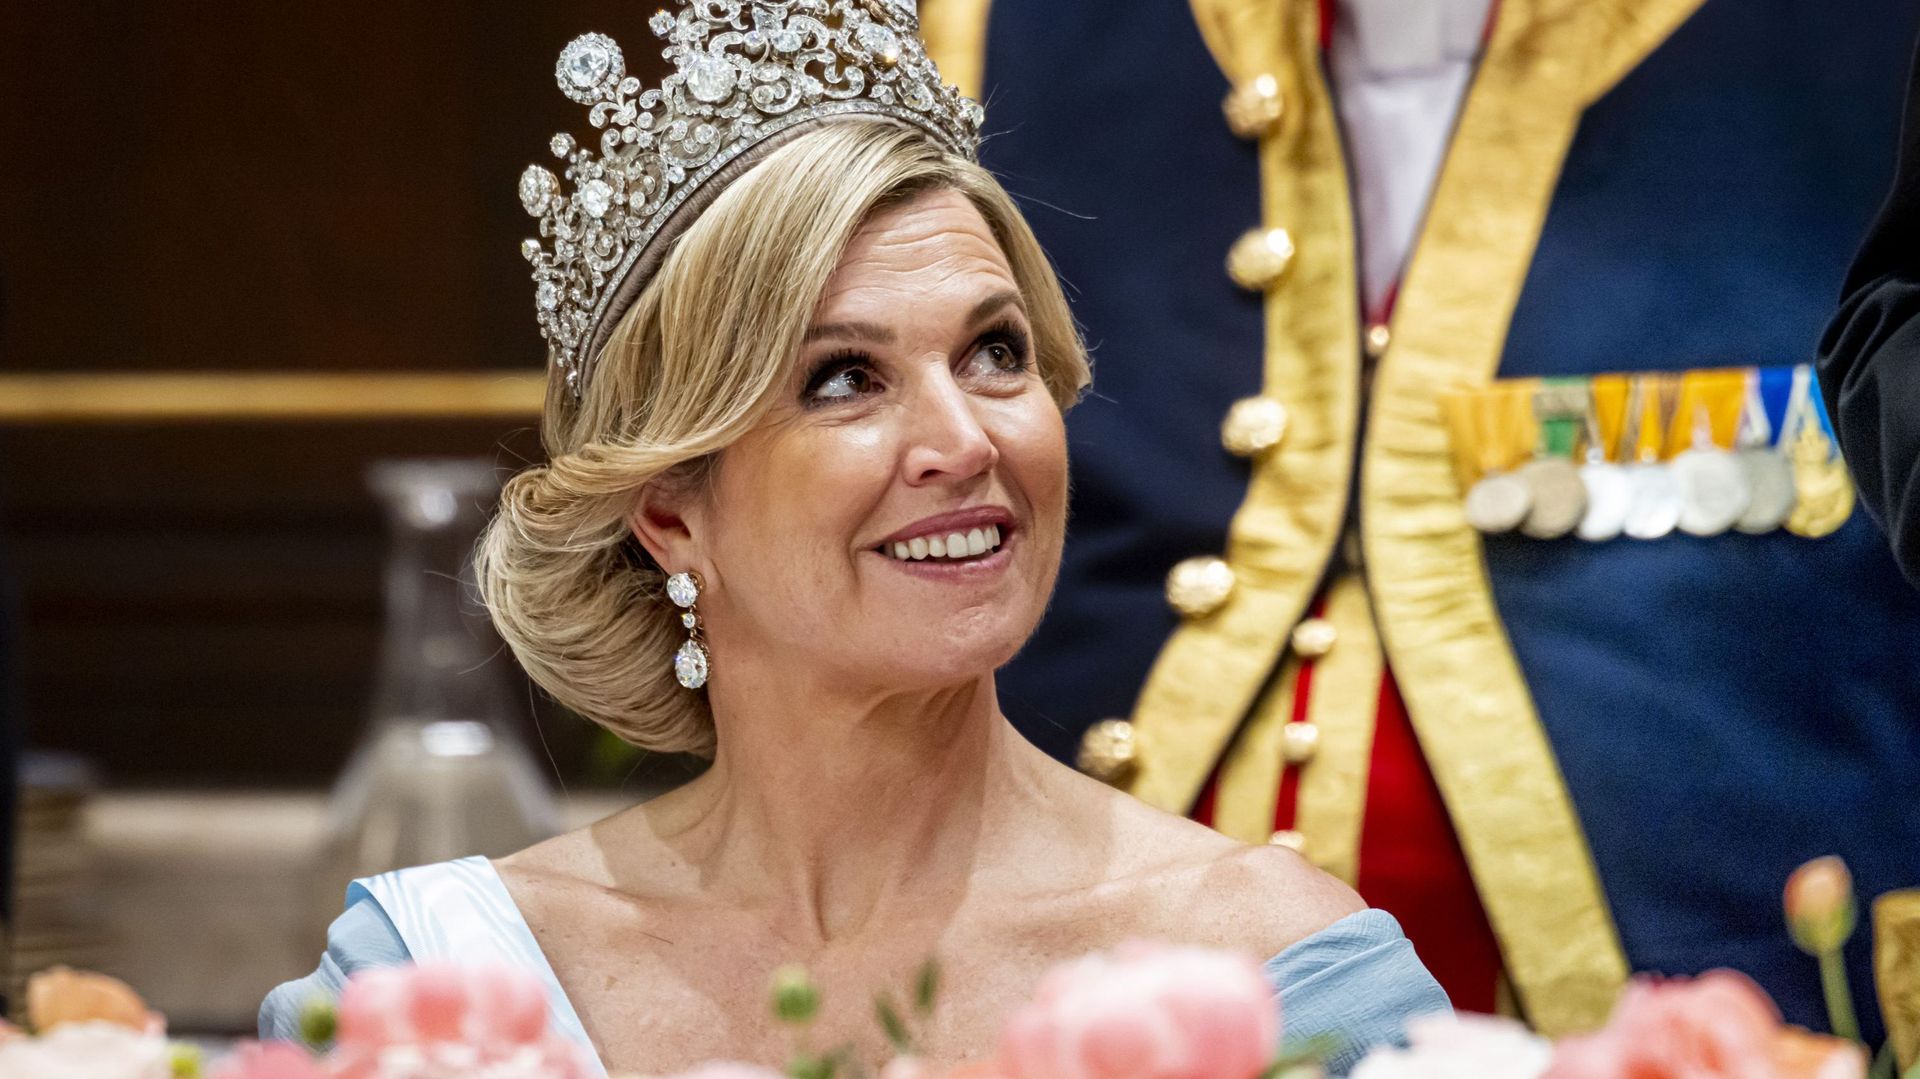 Après "The Crown" sur Elizabeth II, la reine Maxima des Pays-Bas star d’une série télévisée